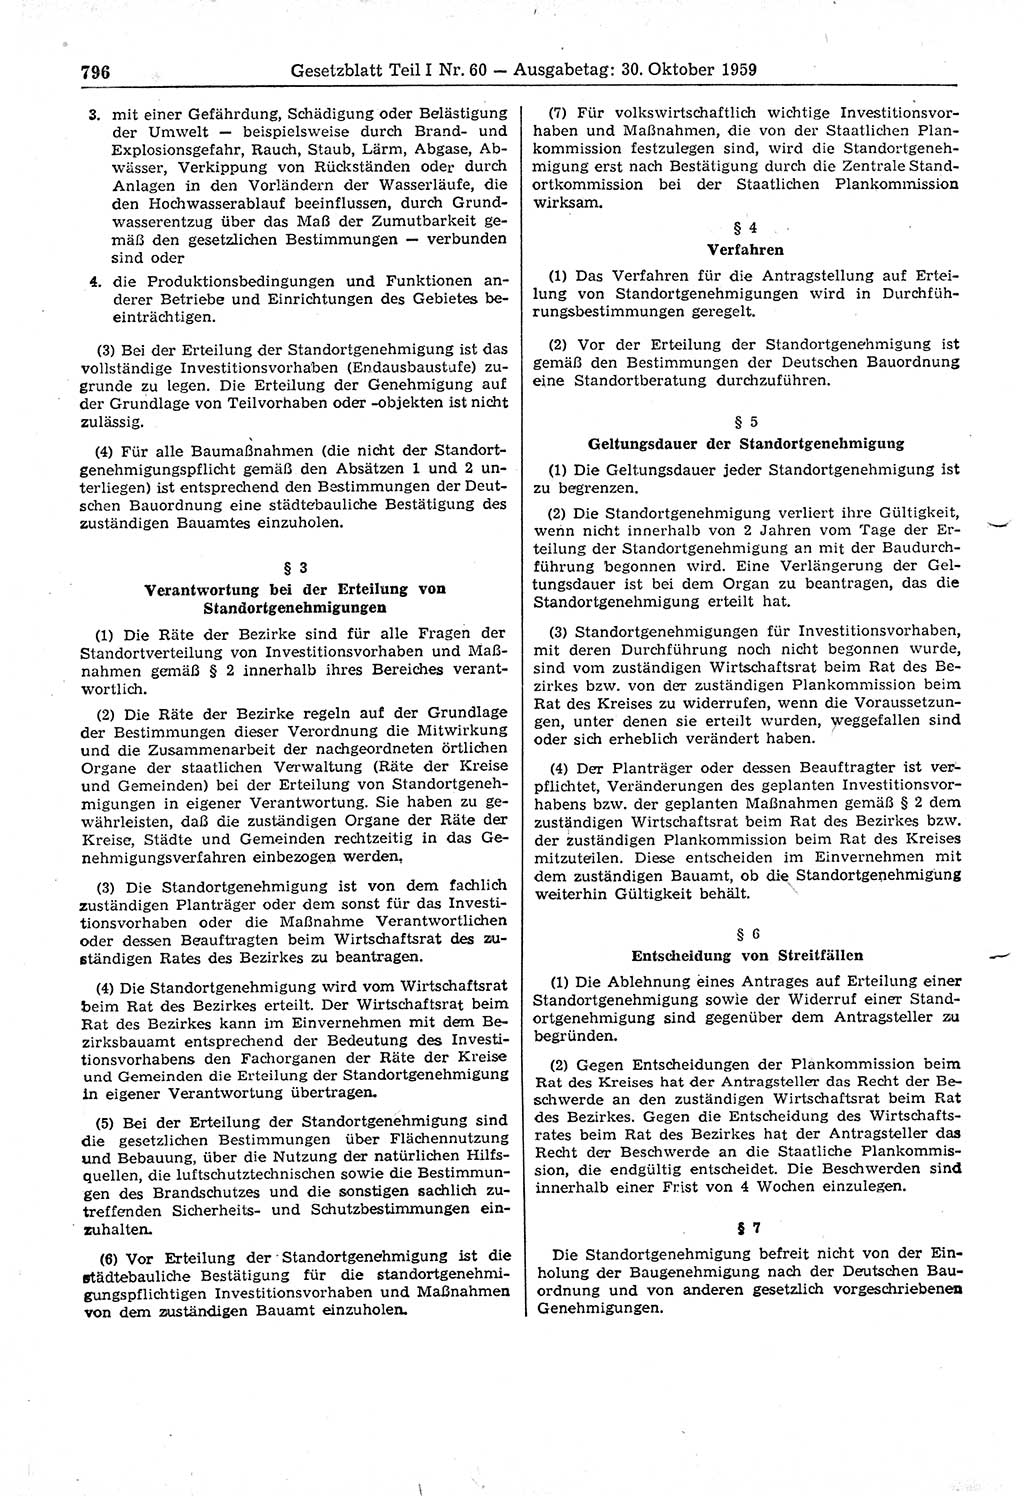 Gesetzblatt (GBl.) der Deutschen Demokratischen Republik (DDR) Teil Ⅰ 1959, Seite 796 (GBl. DDR Ⅰ 1959, S. 796)